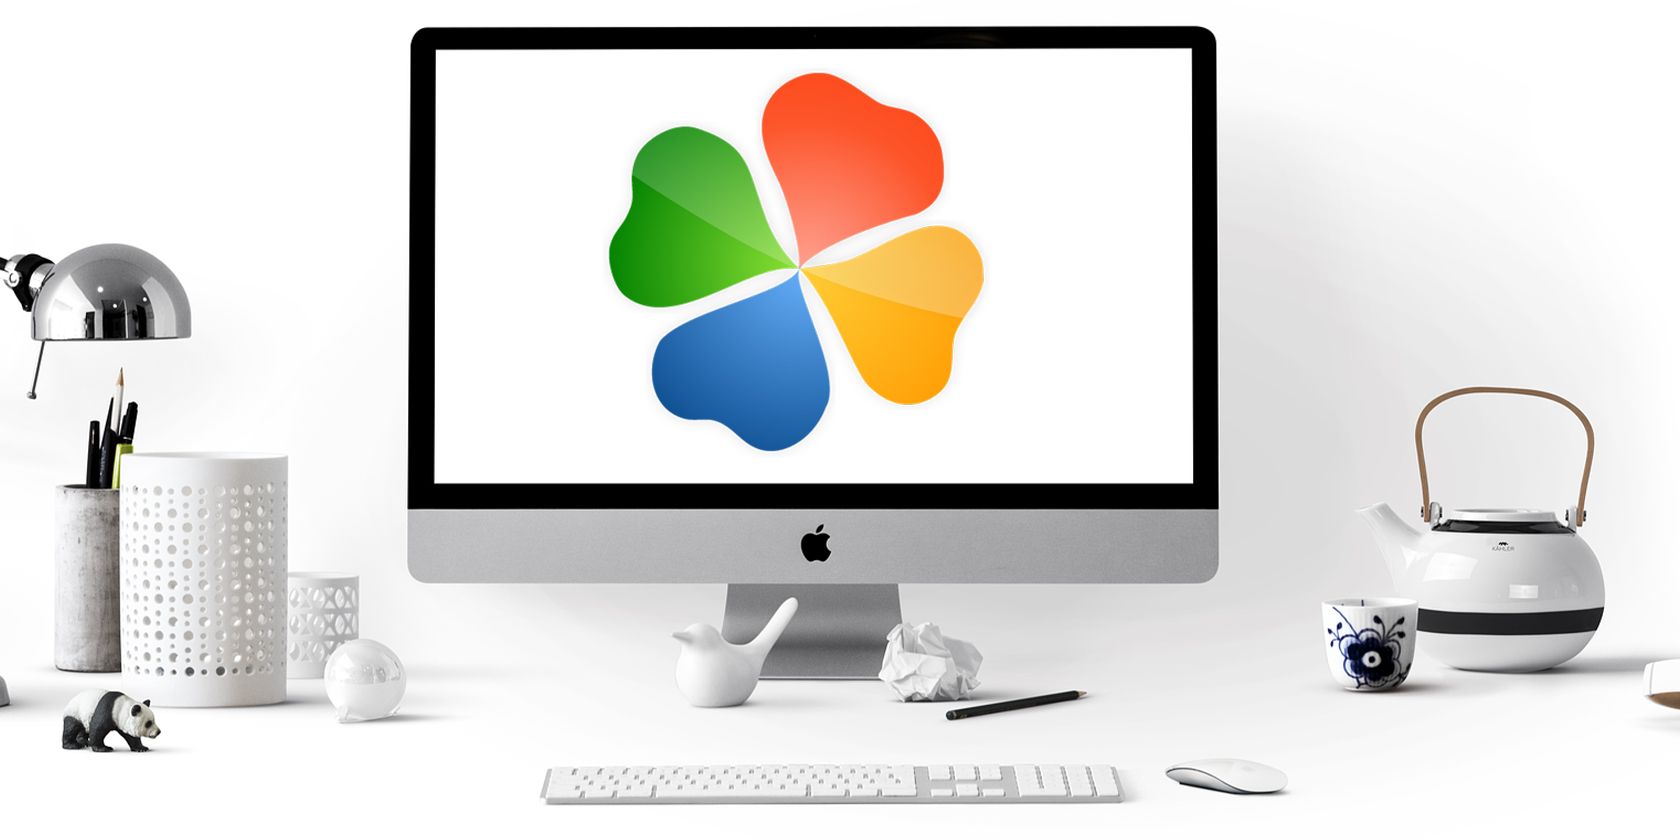 PlayOnMac: Corra jogos e software do Windows no macOS